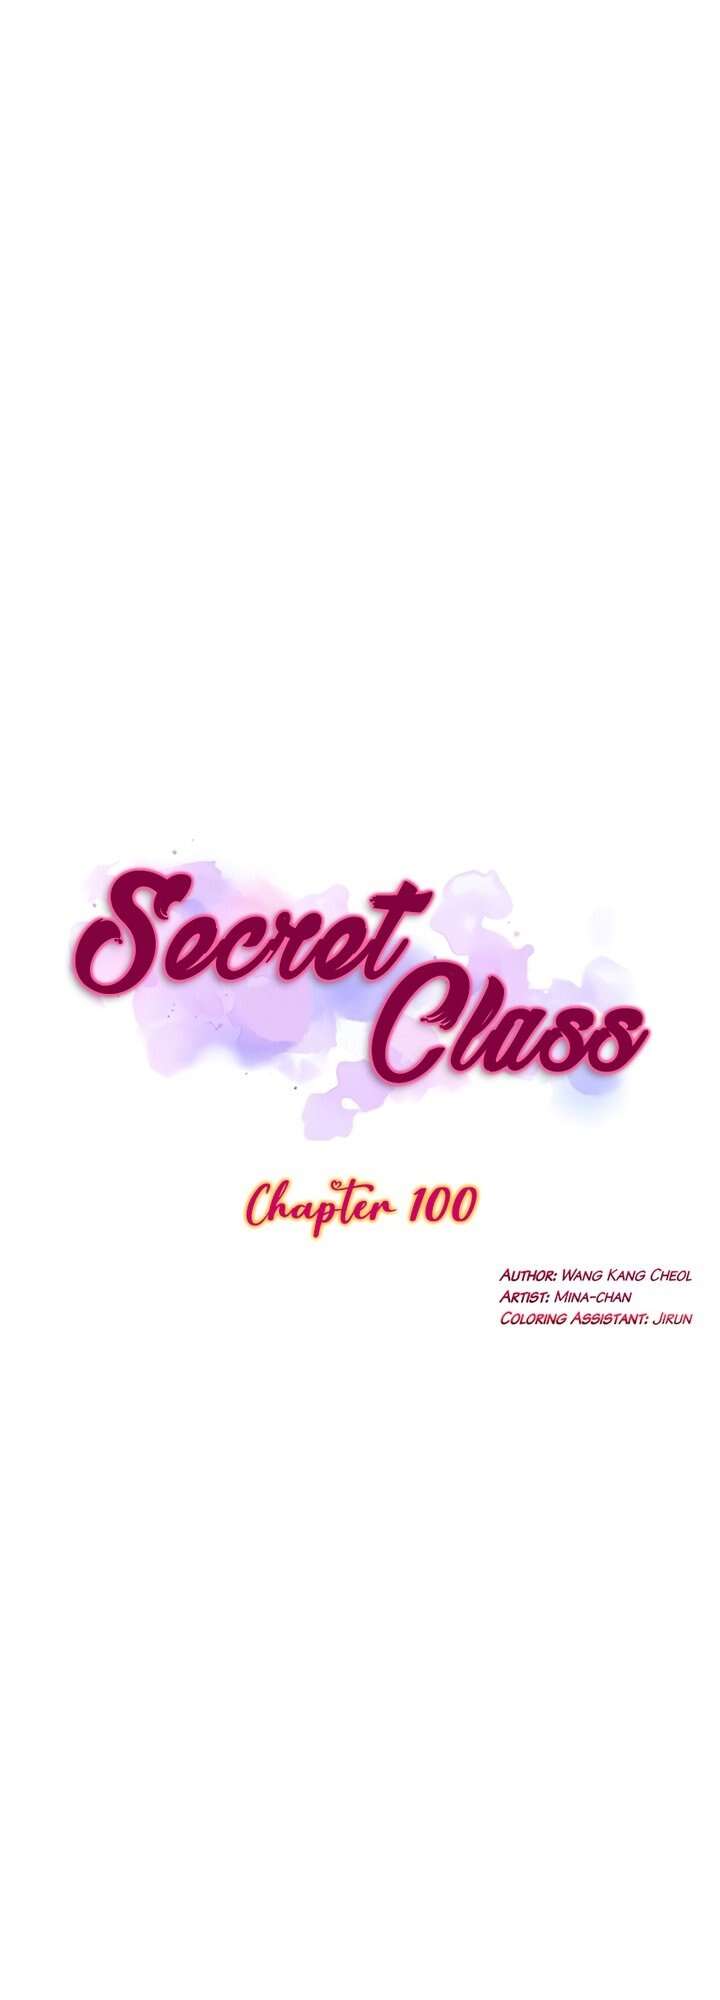 SECRET CLASS CHAPITRE 100, lire SECRET CLASS CHAPITRE 100,SECRET CLASS CHAPITRE 100 manga, SECRET CLASS CHAPITRE 100 raw manga, SECRET CLASS CHAPITRE 100 online, SECRET CLASS CHAPITRE 100 japscan, SECRET CLASS CHAPITRE 100 scantrad, manga origine x secret class, secret class, secret class scan vf, secret-class-chapitre-100, SECRET CLASS SCAN VF, secret class mangaplus,secret class manga fr,secret class manga français,secret class fnac,secret class crunchyroll,secret class fanfox,secret class wakanim, manga origines x secret class